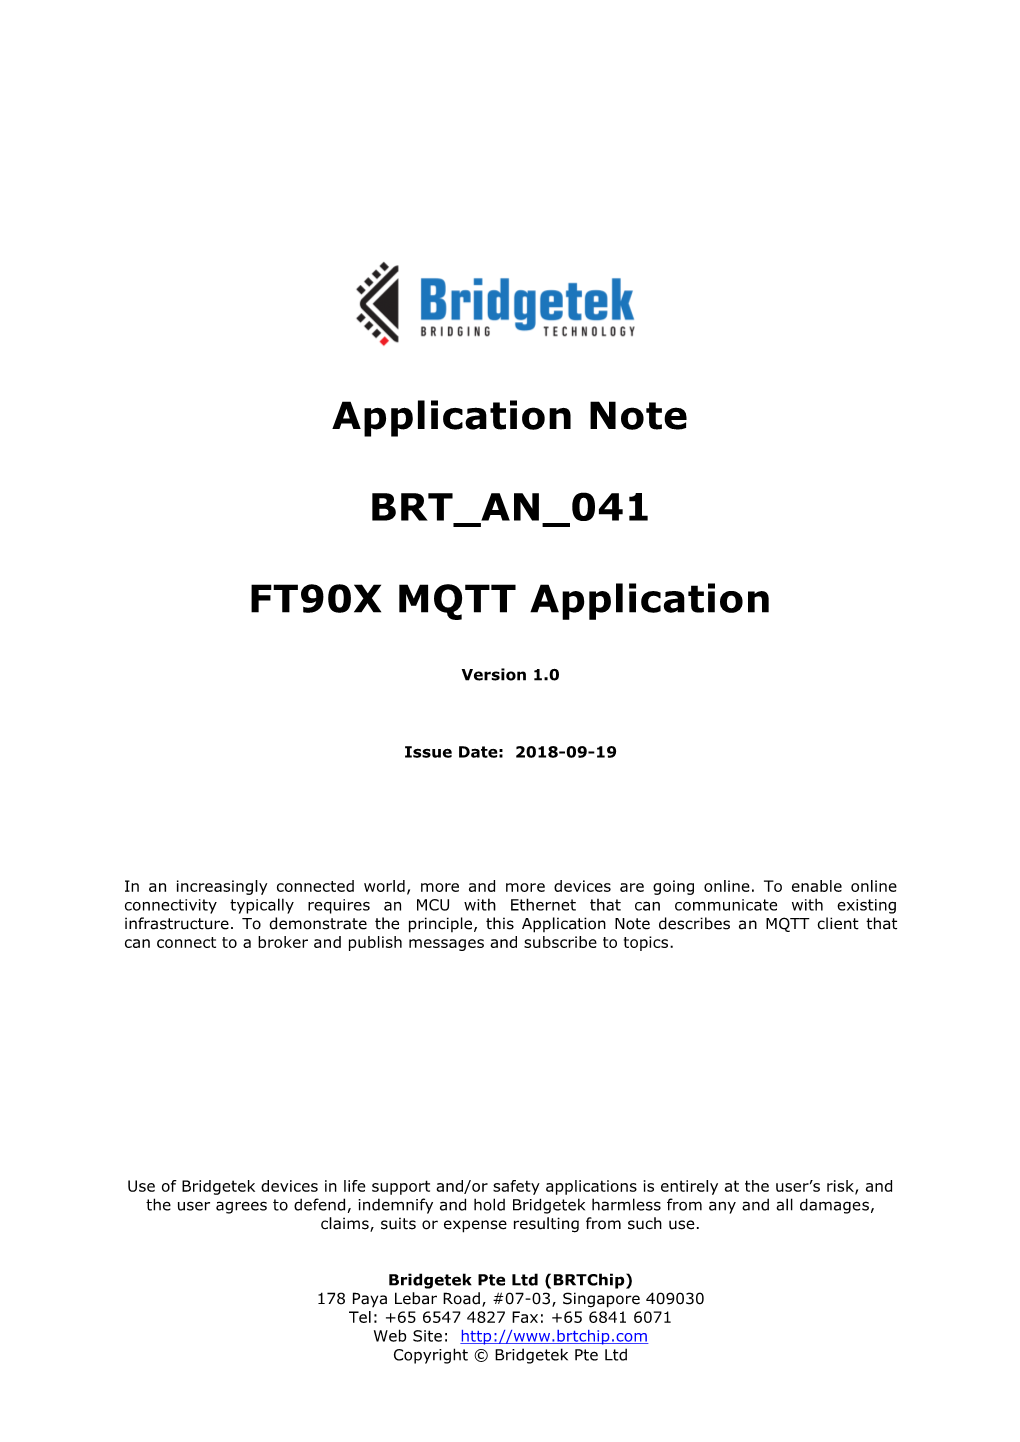 BRT an 041 FT90X MQTT Application Version 1.0